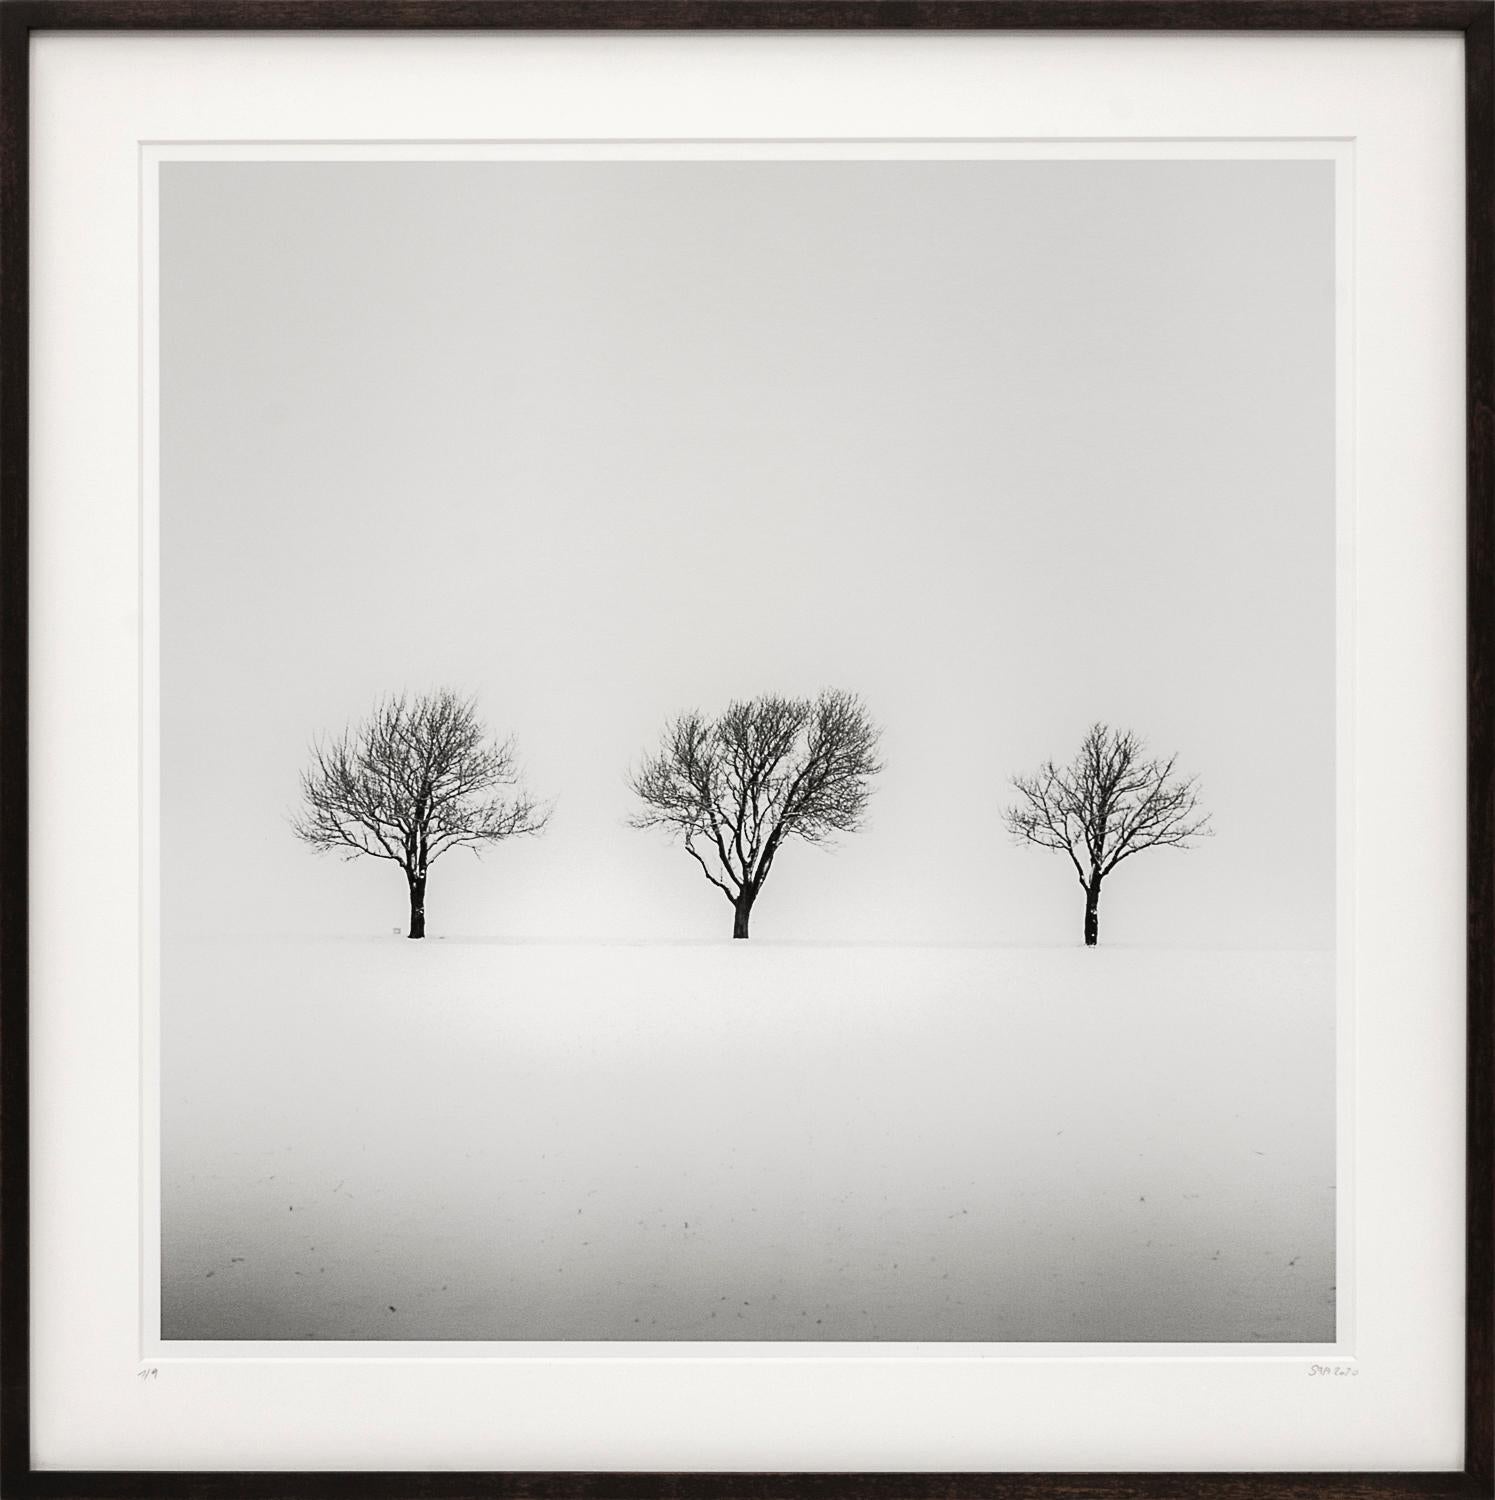 Trees in snowy Field, photographie d'art gélatino-argentique en noir et blanc, encadrée